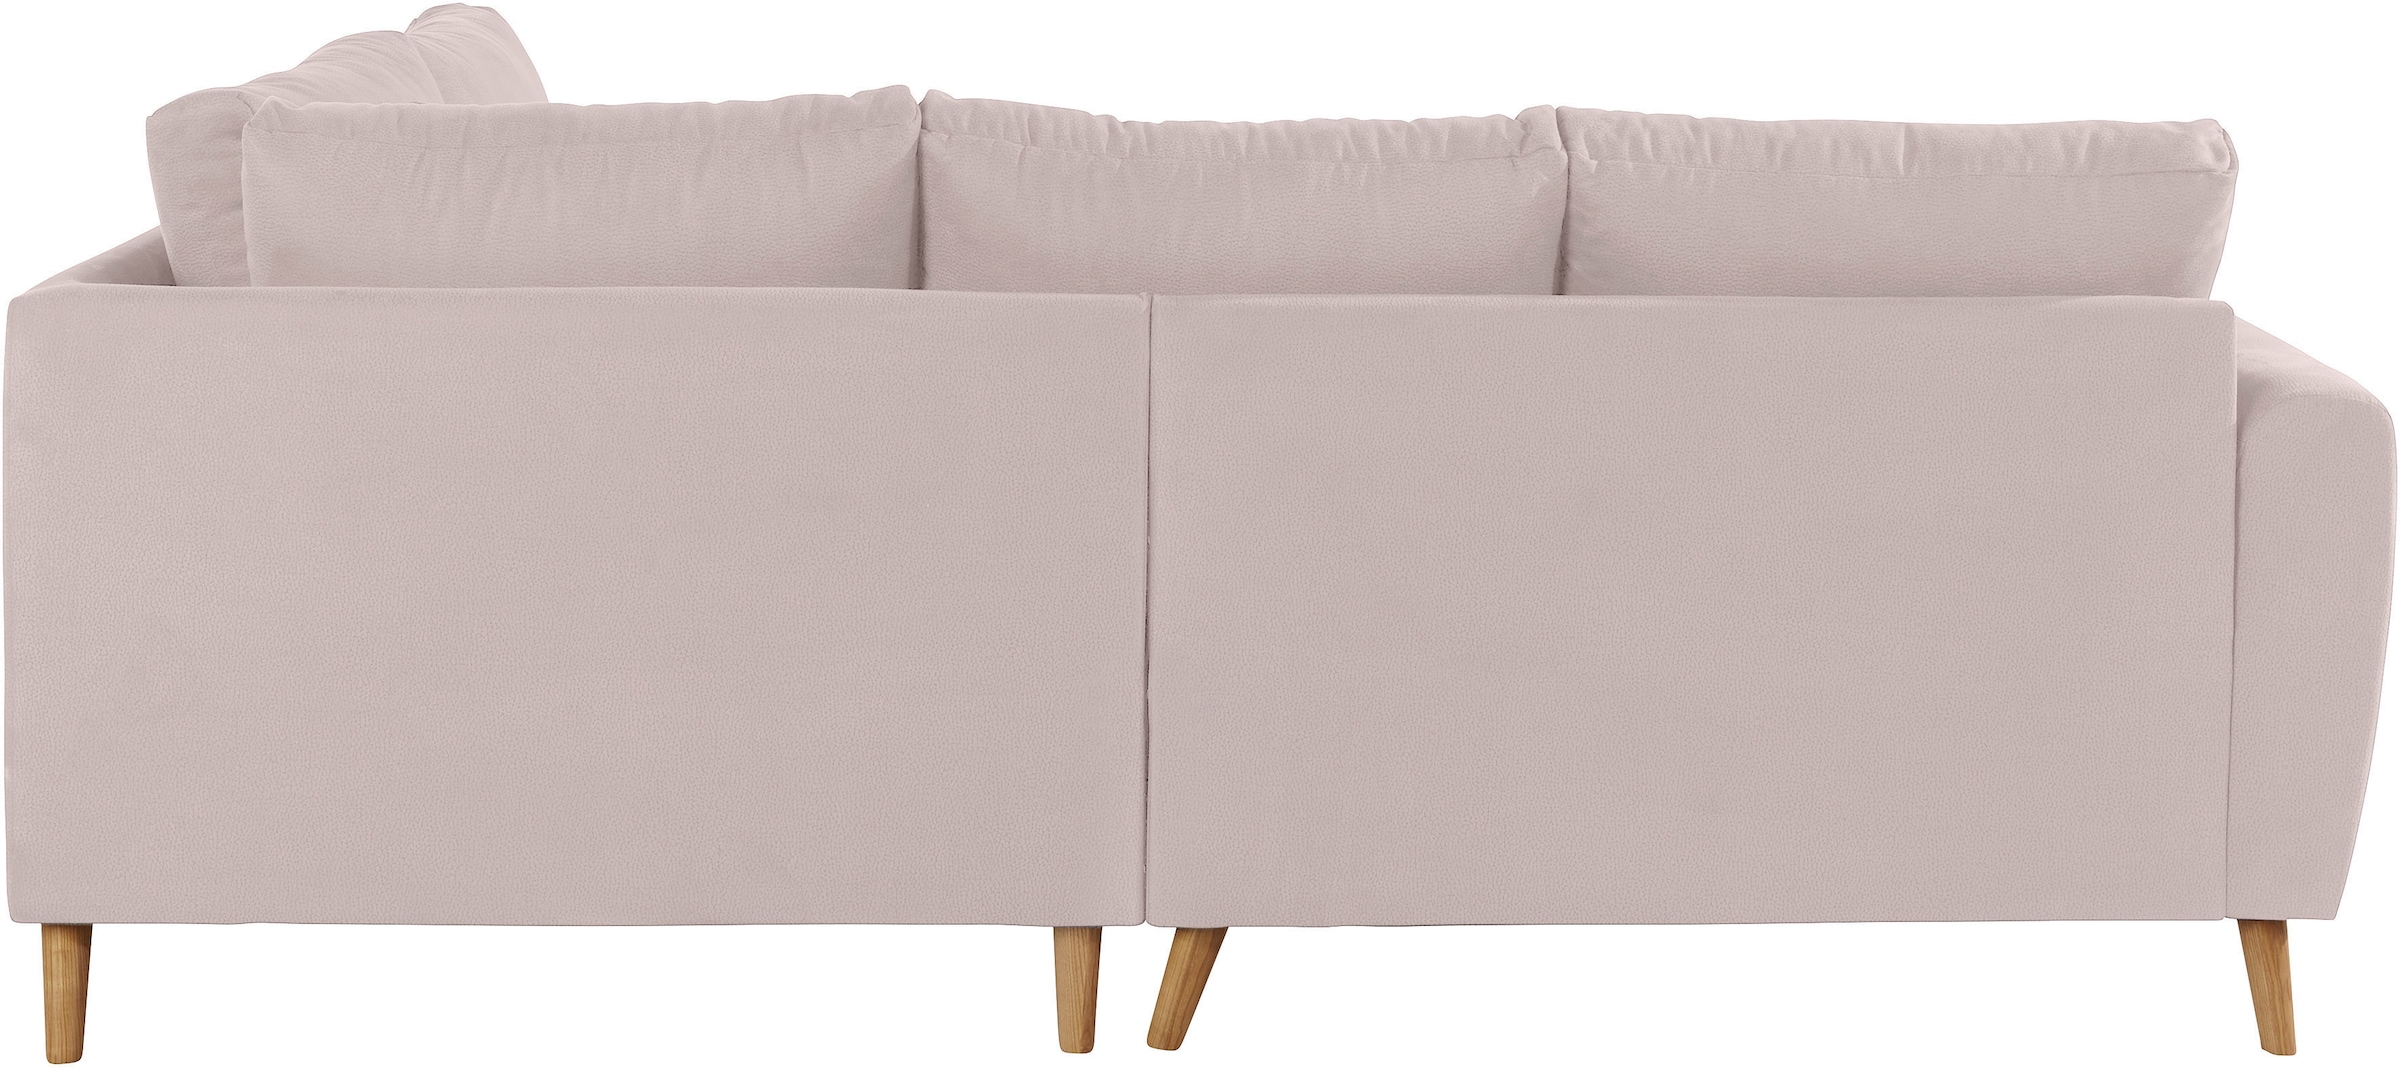 Home affaire Ecksofa »Penelope Luxus L-Form«, mit besonders hochwertiger Polsterung für bis zu 140 kg pro Sitzfläche